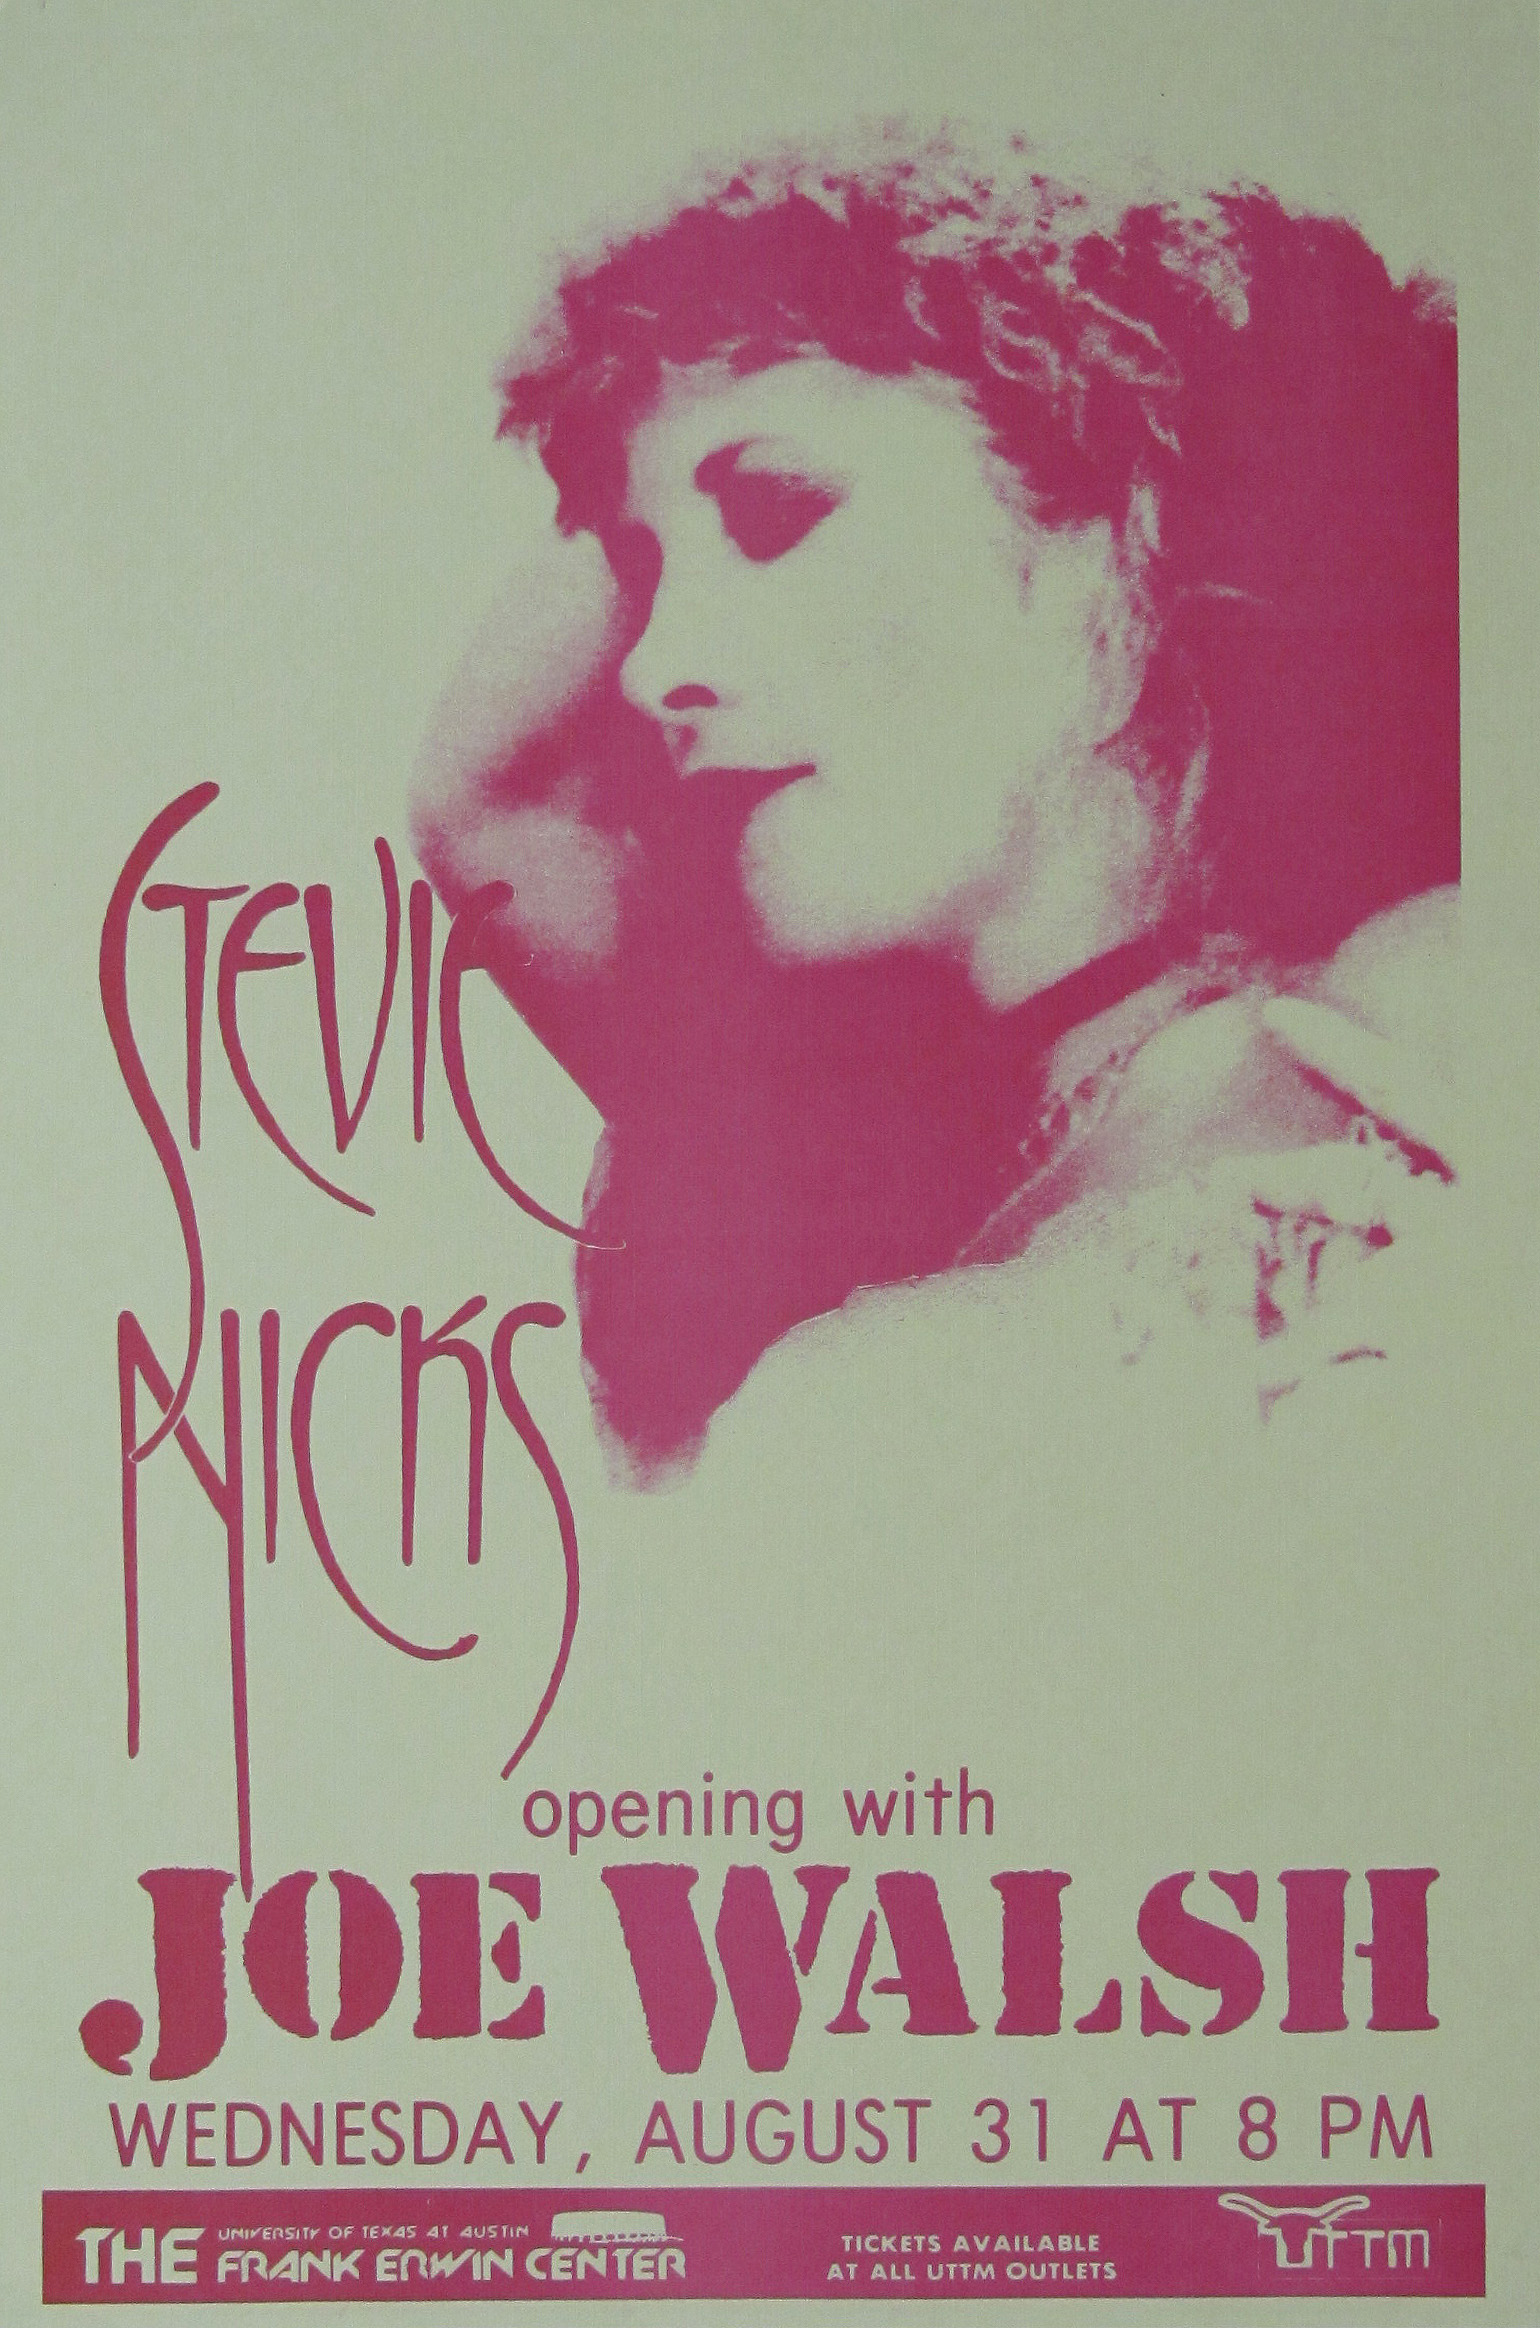 Stevie Nicks Concert Poster